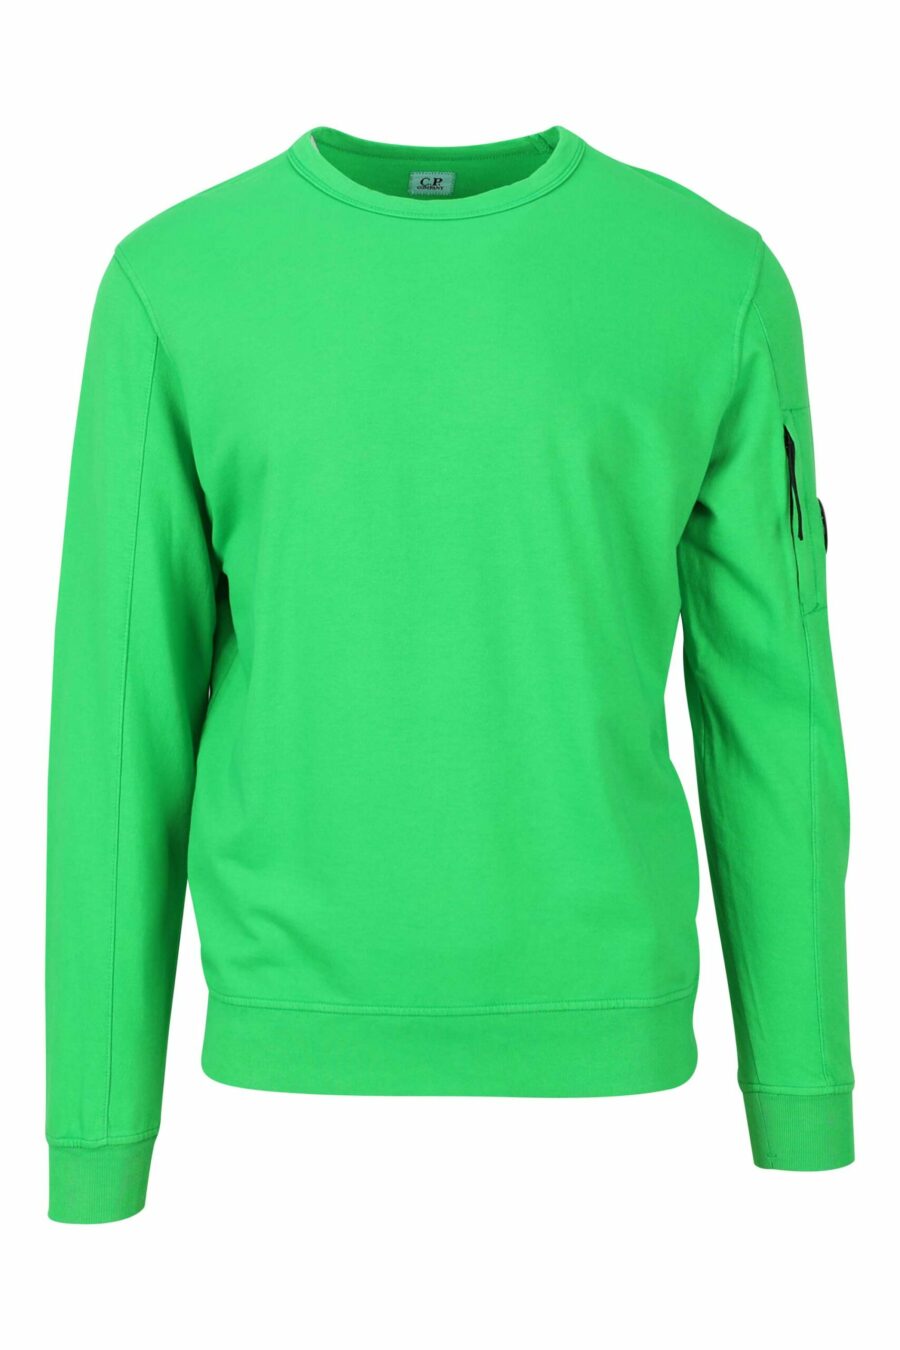 Grünes Sweatshirt mit minilogue Seitenlinse - 7620943586725 1 skaliert